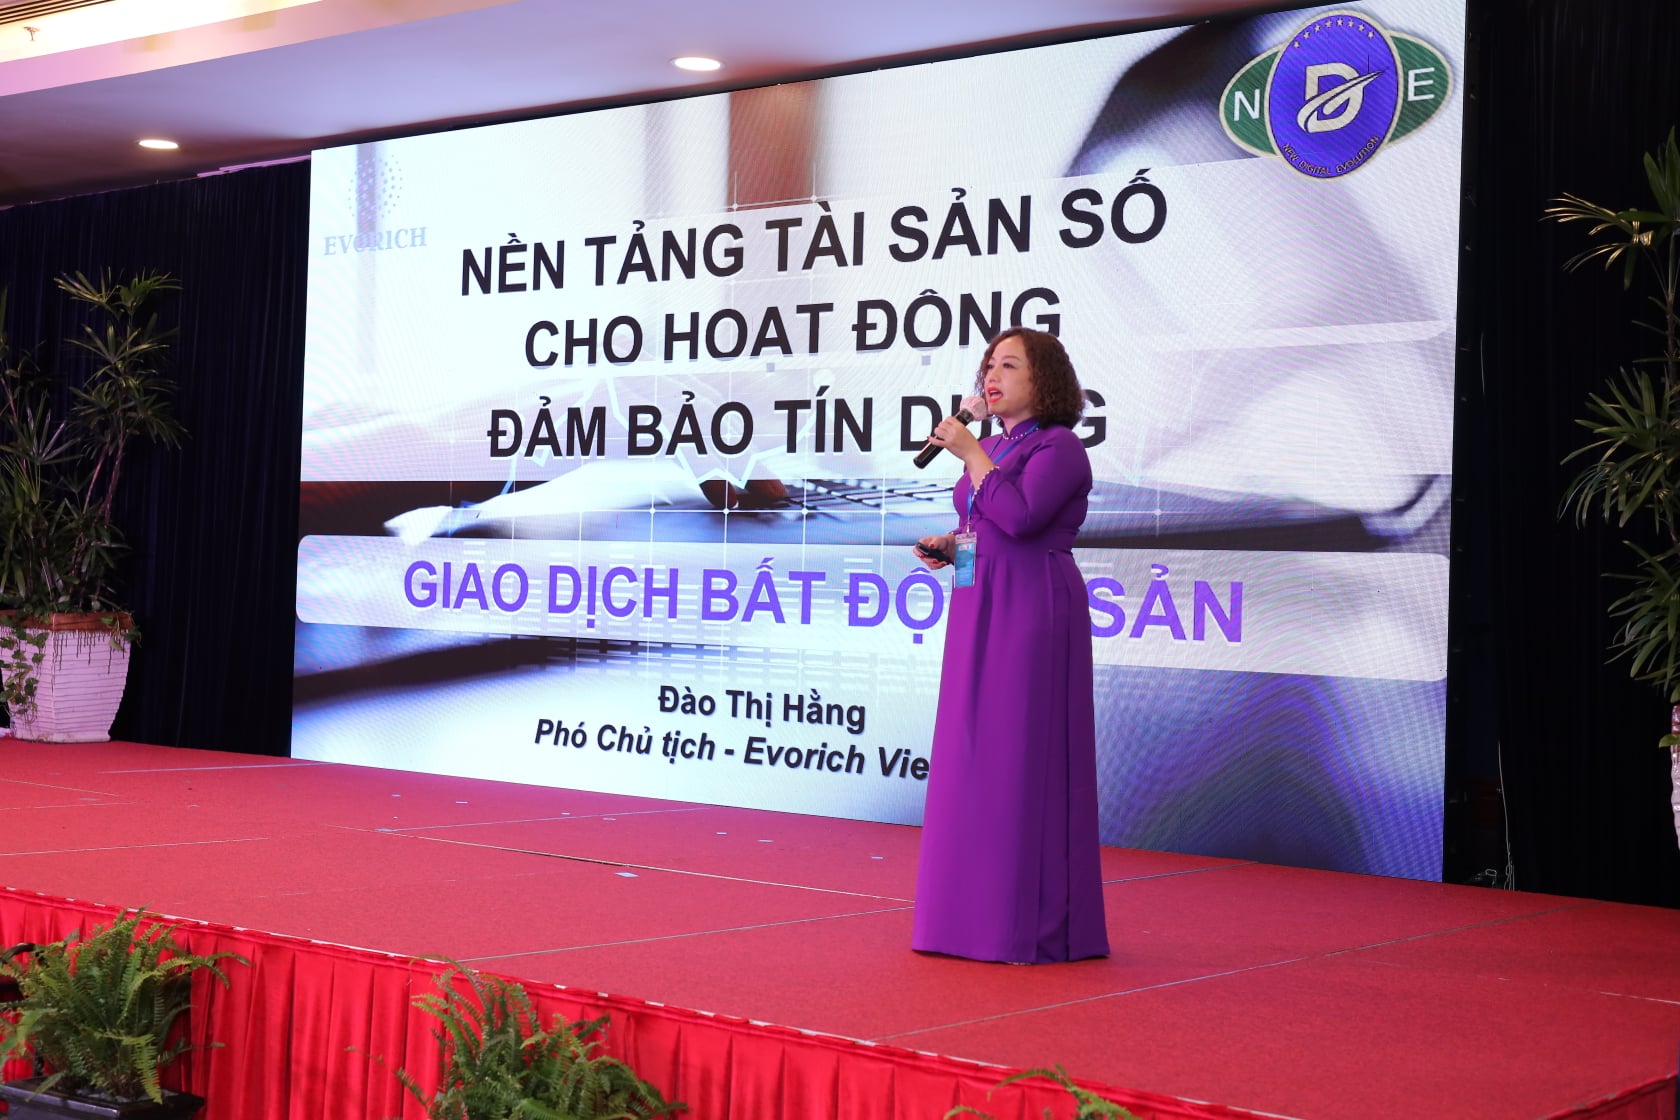 Đào Thị Hằng, Phó Chủ tịch, Công ty Api Neew Vietnam đã chia sẻ chủ đề “Nền tảng tài sản số cho hoạt động đảm bảo tín dụng trong giao dịch bất động sản”